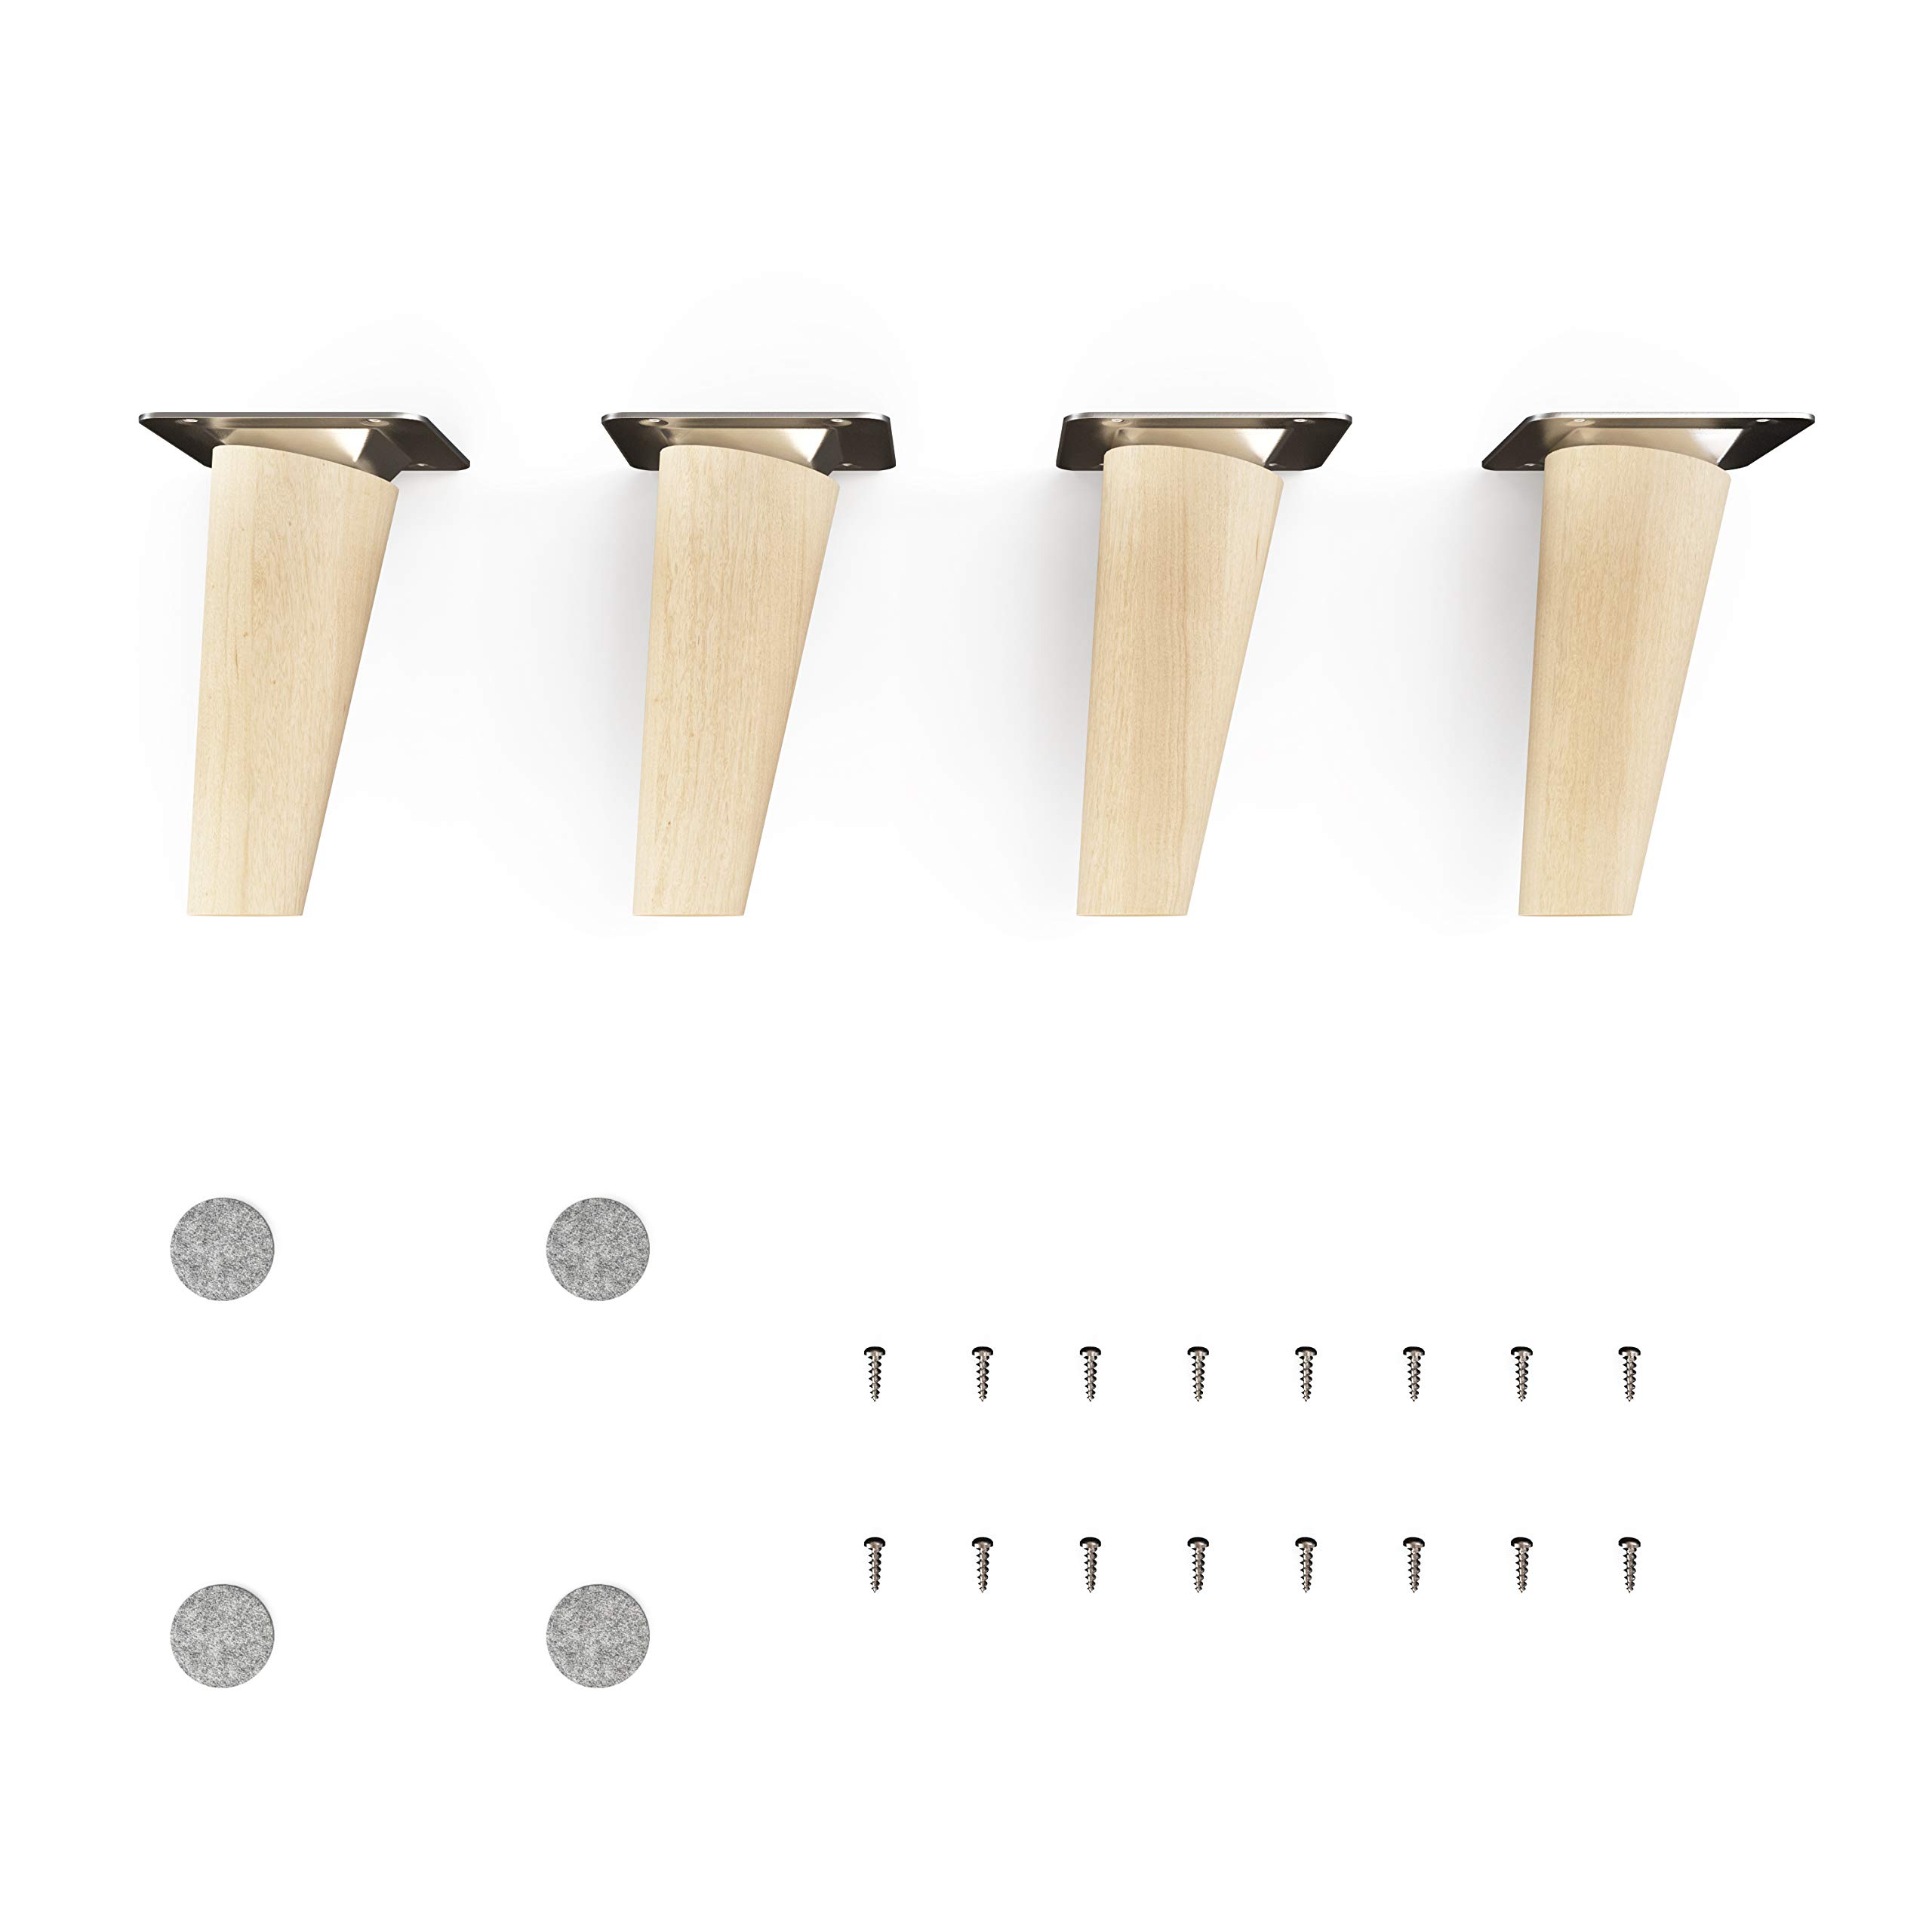 sossai® Holz-Möbelfüße - Clif Round | Natur (unbehandelt) | Höhe: 10 cm | HMF2 | rund, konisch (schräge Ausführung) | Material: Massivholz (Buche) | für Stühle, Tische, Schränke etc.